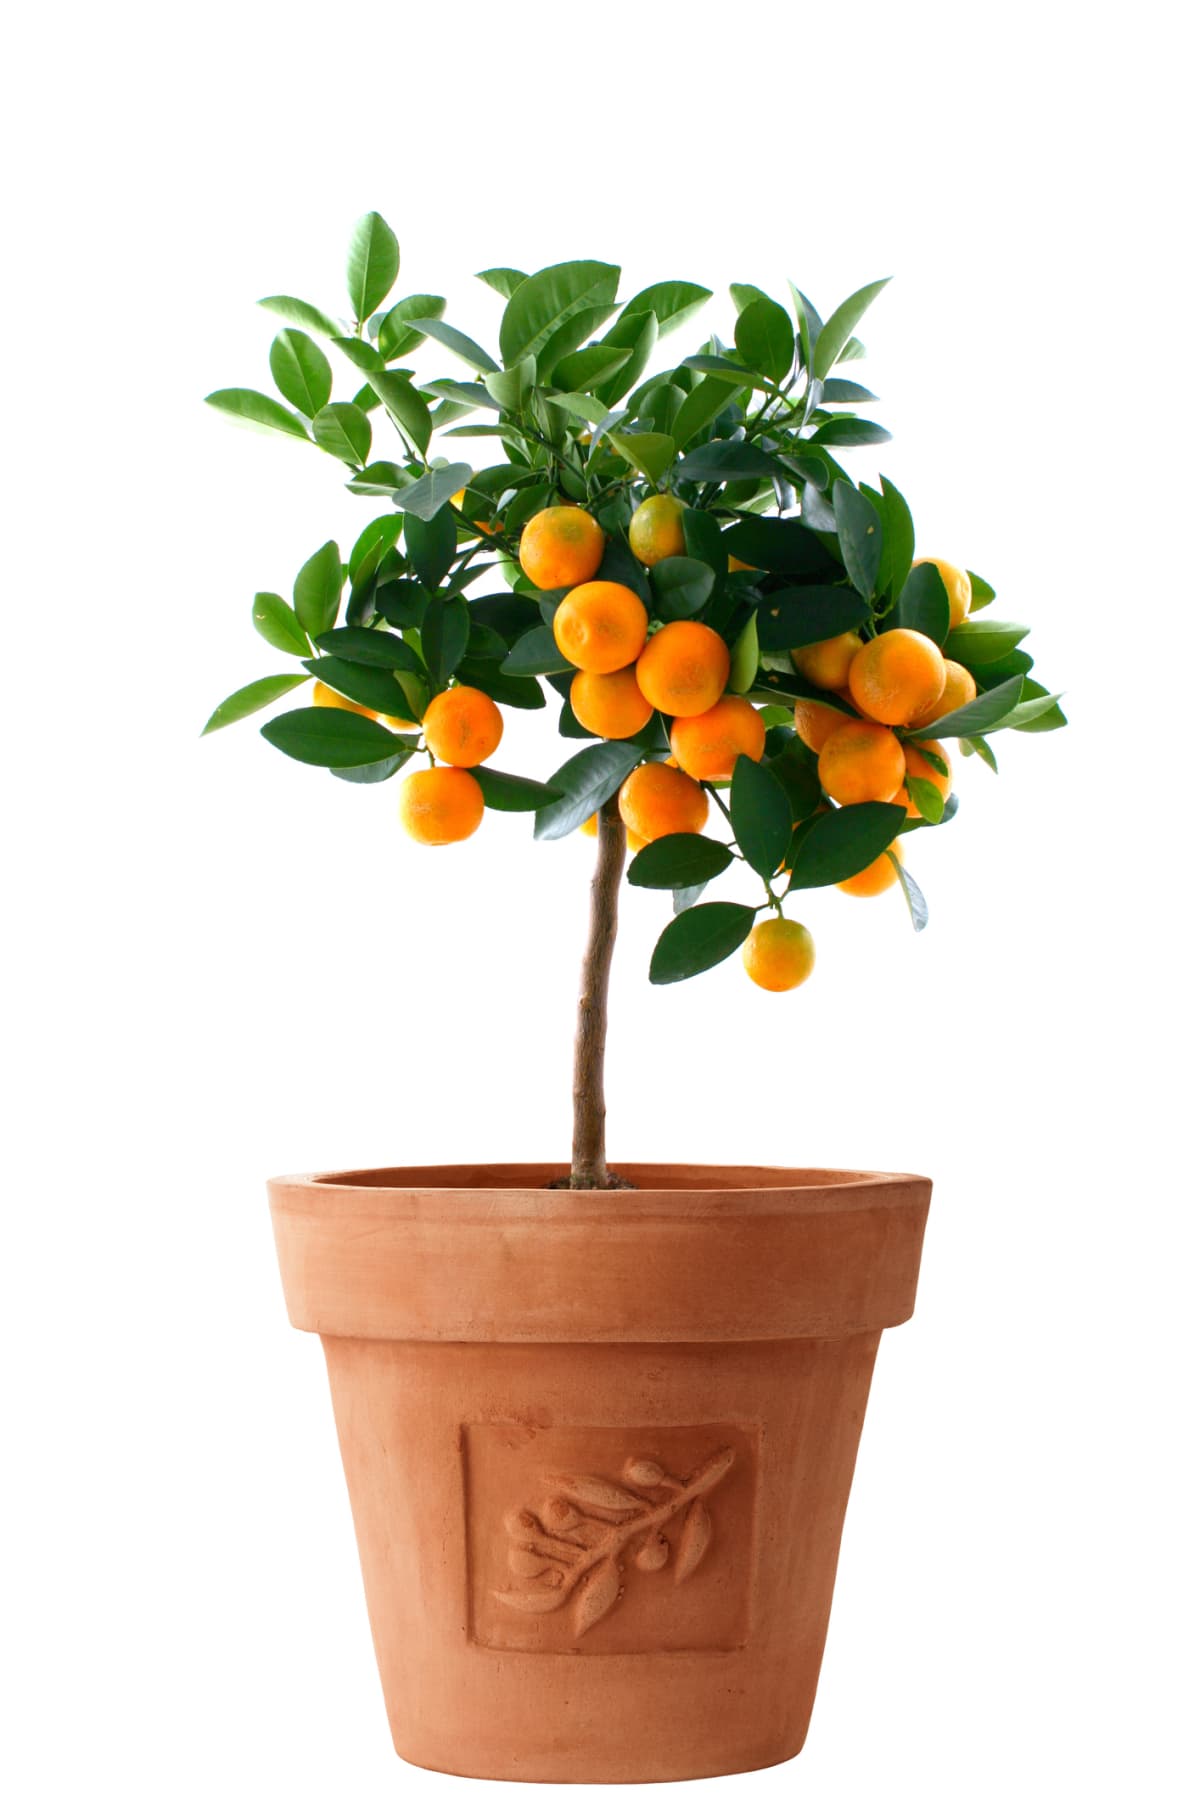 An orange tree growing in a pot